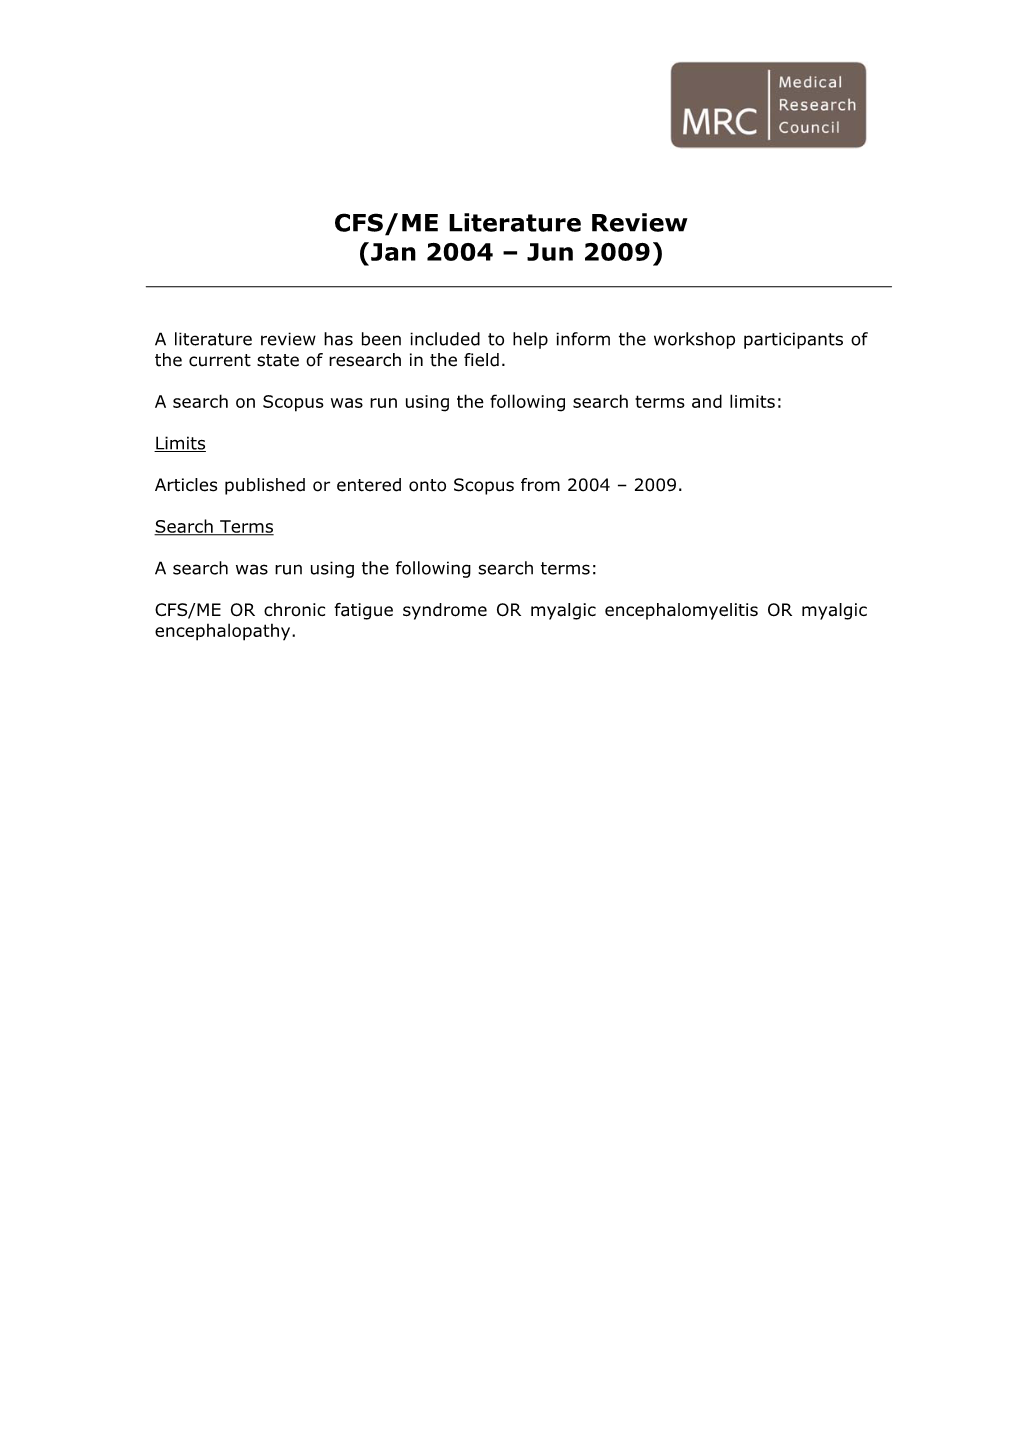 CFS/ME Literature Review (Jan 2004 – Jun 2009)